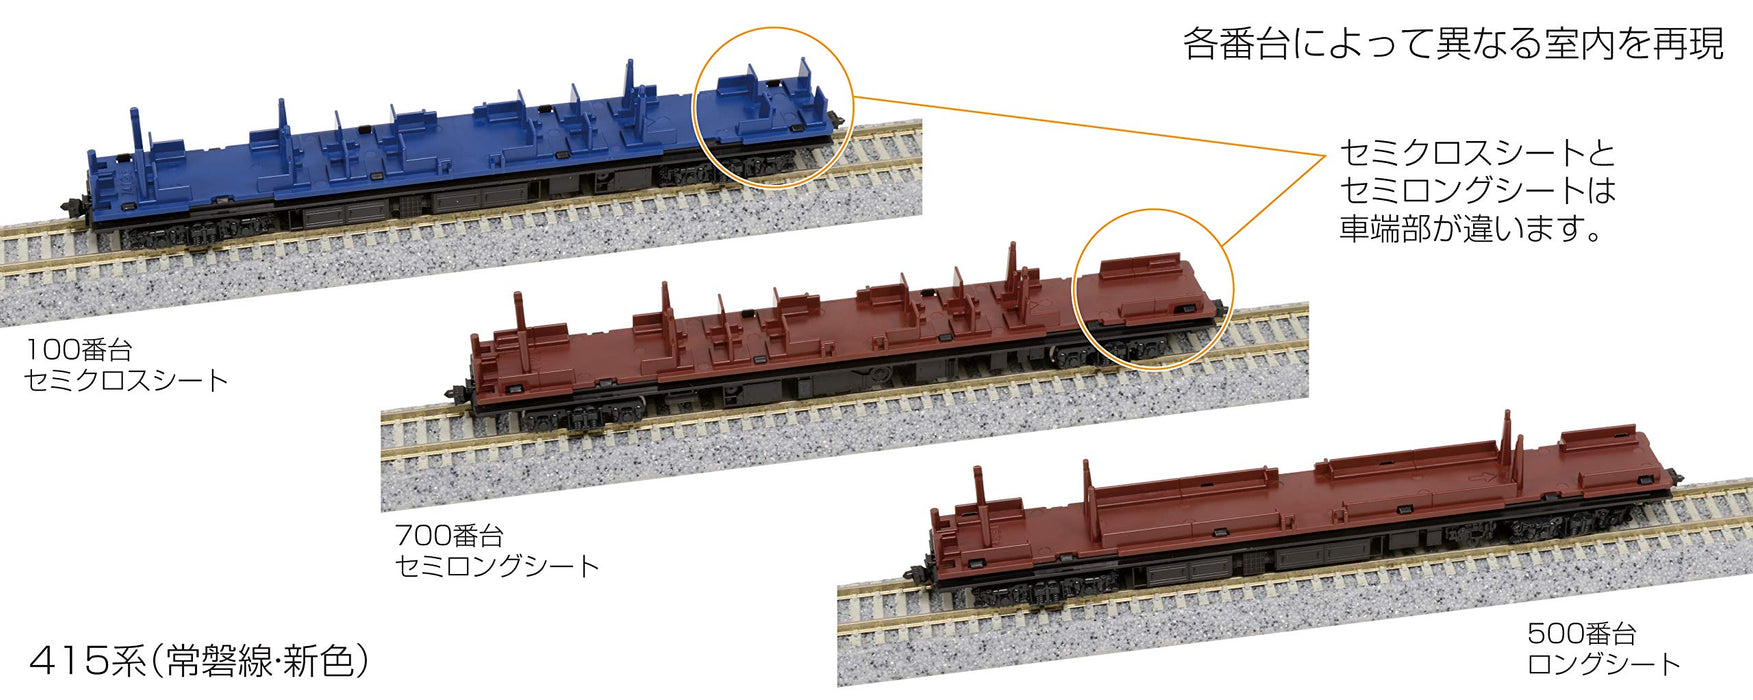 Train modèle ferroviaire Kato N Gauge 415 Series - Joban Line New Color 7-Car Set